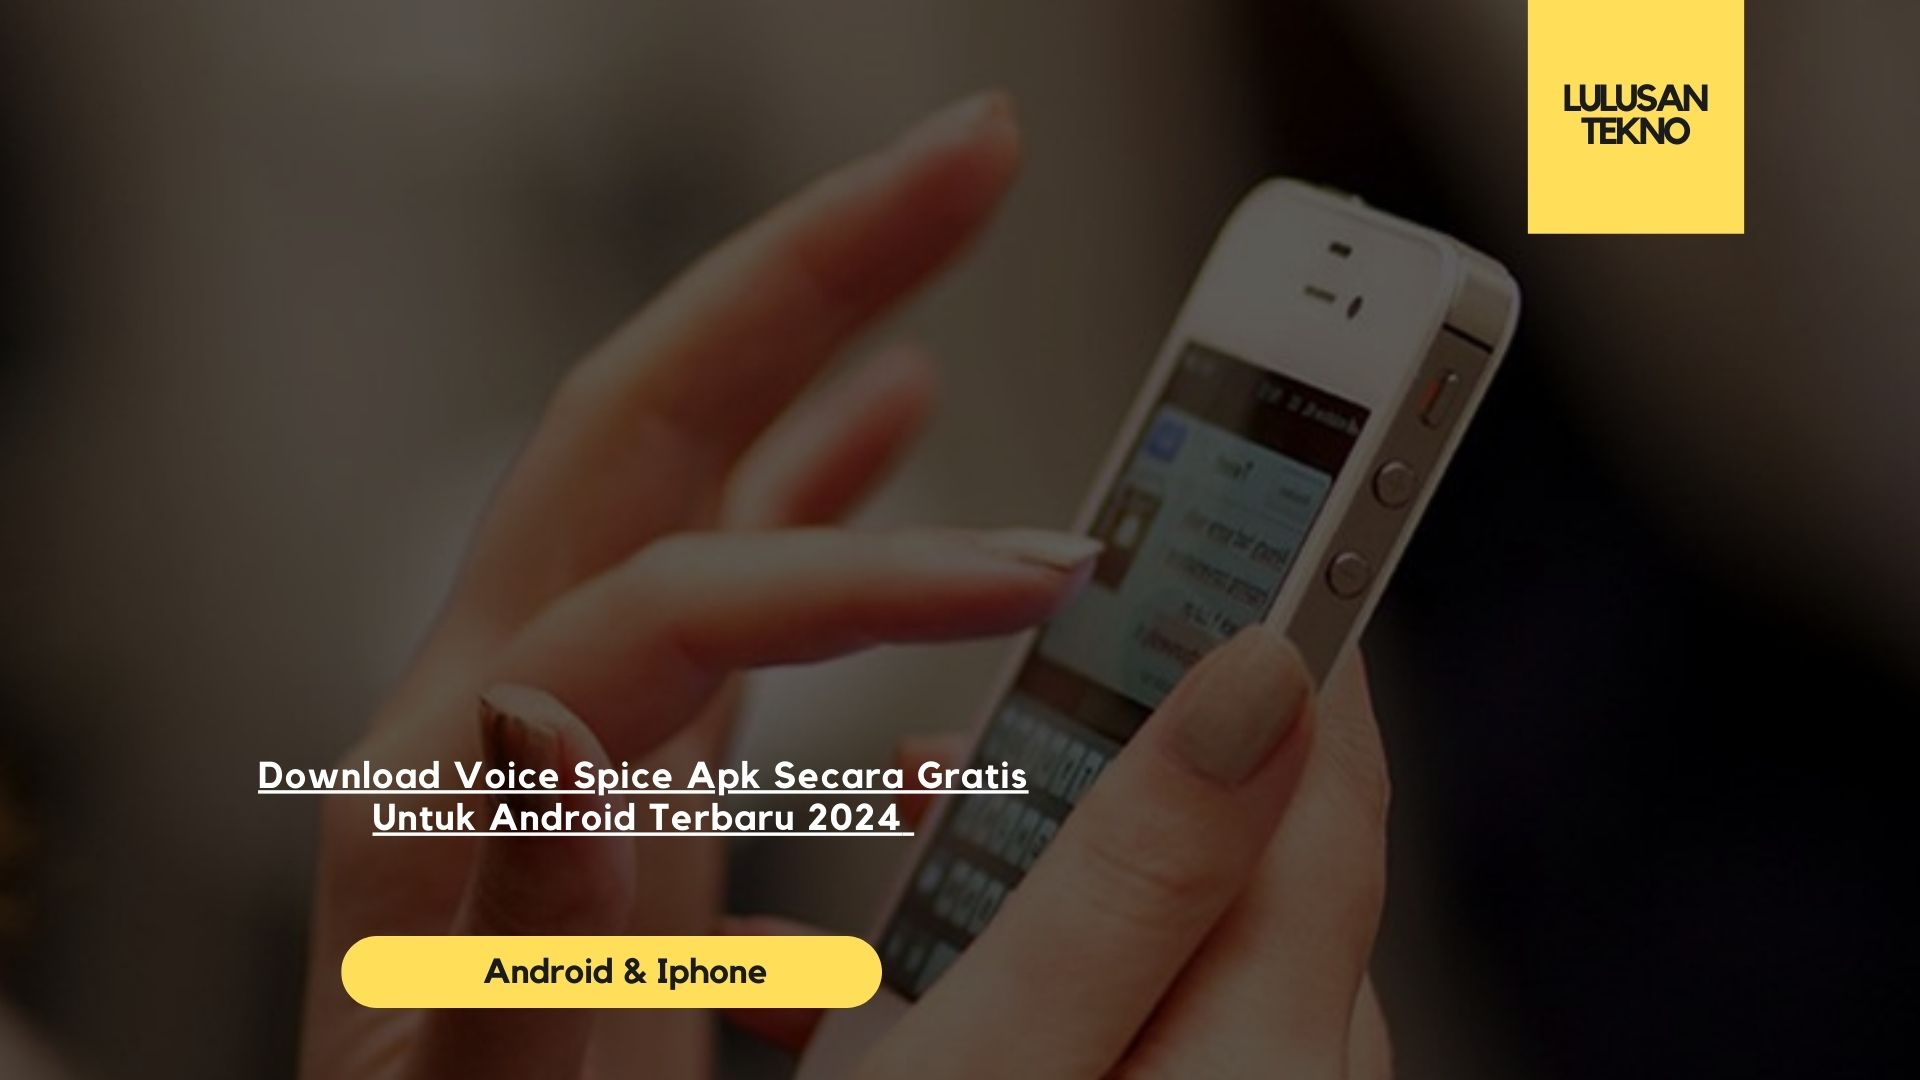 Download Voice Spice Apk Secara Gratis Untuk Android Terbaru 2024